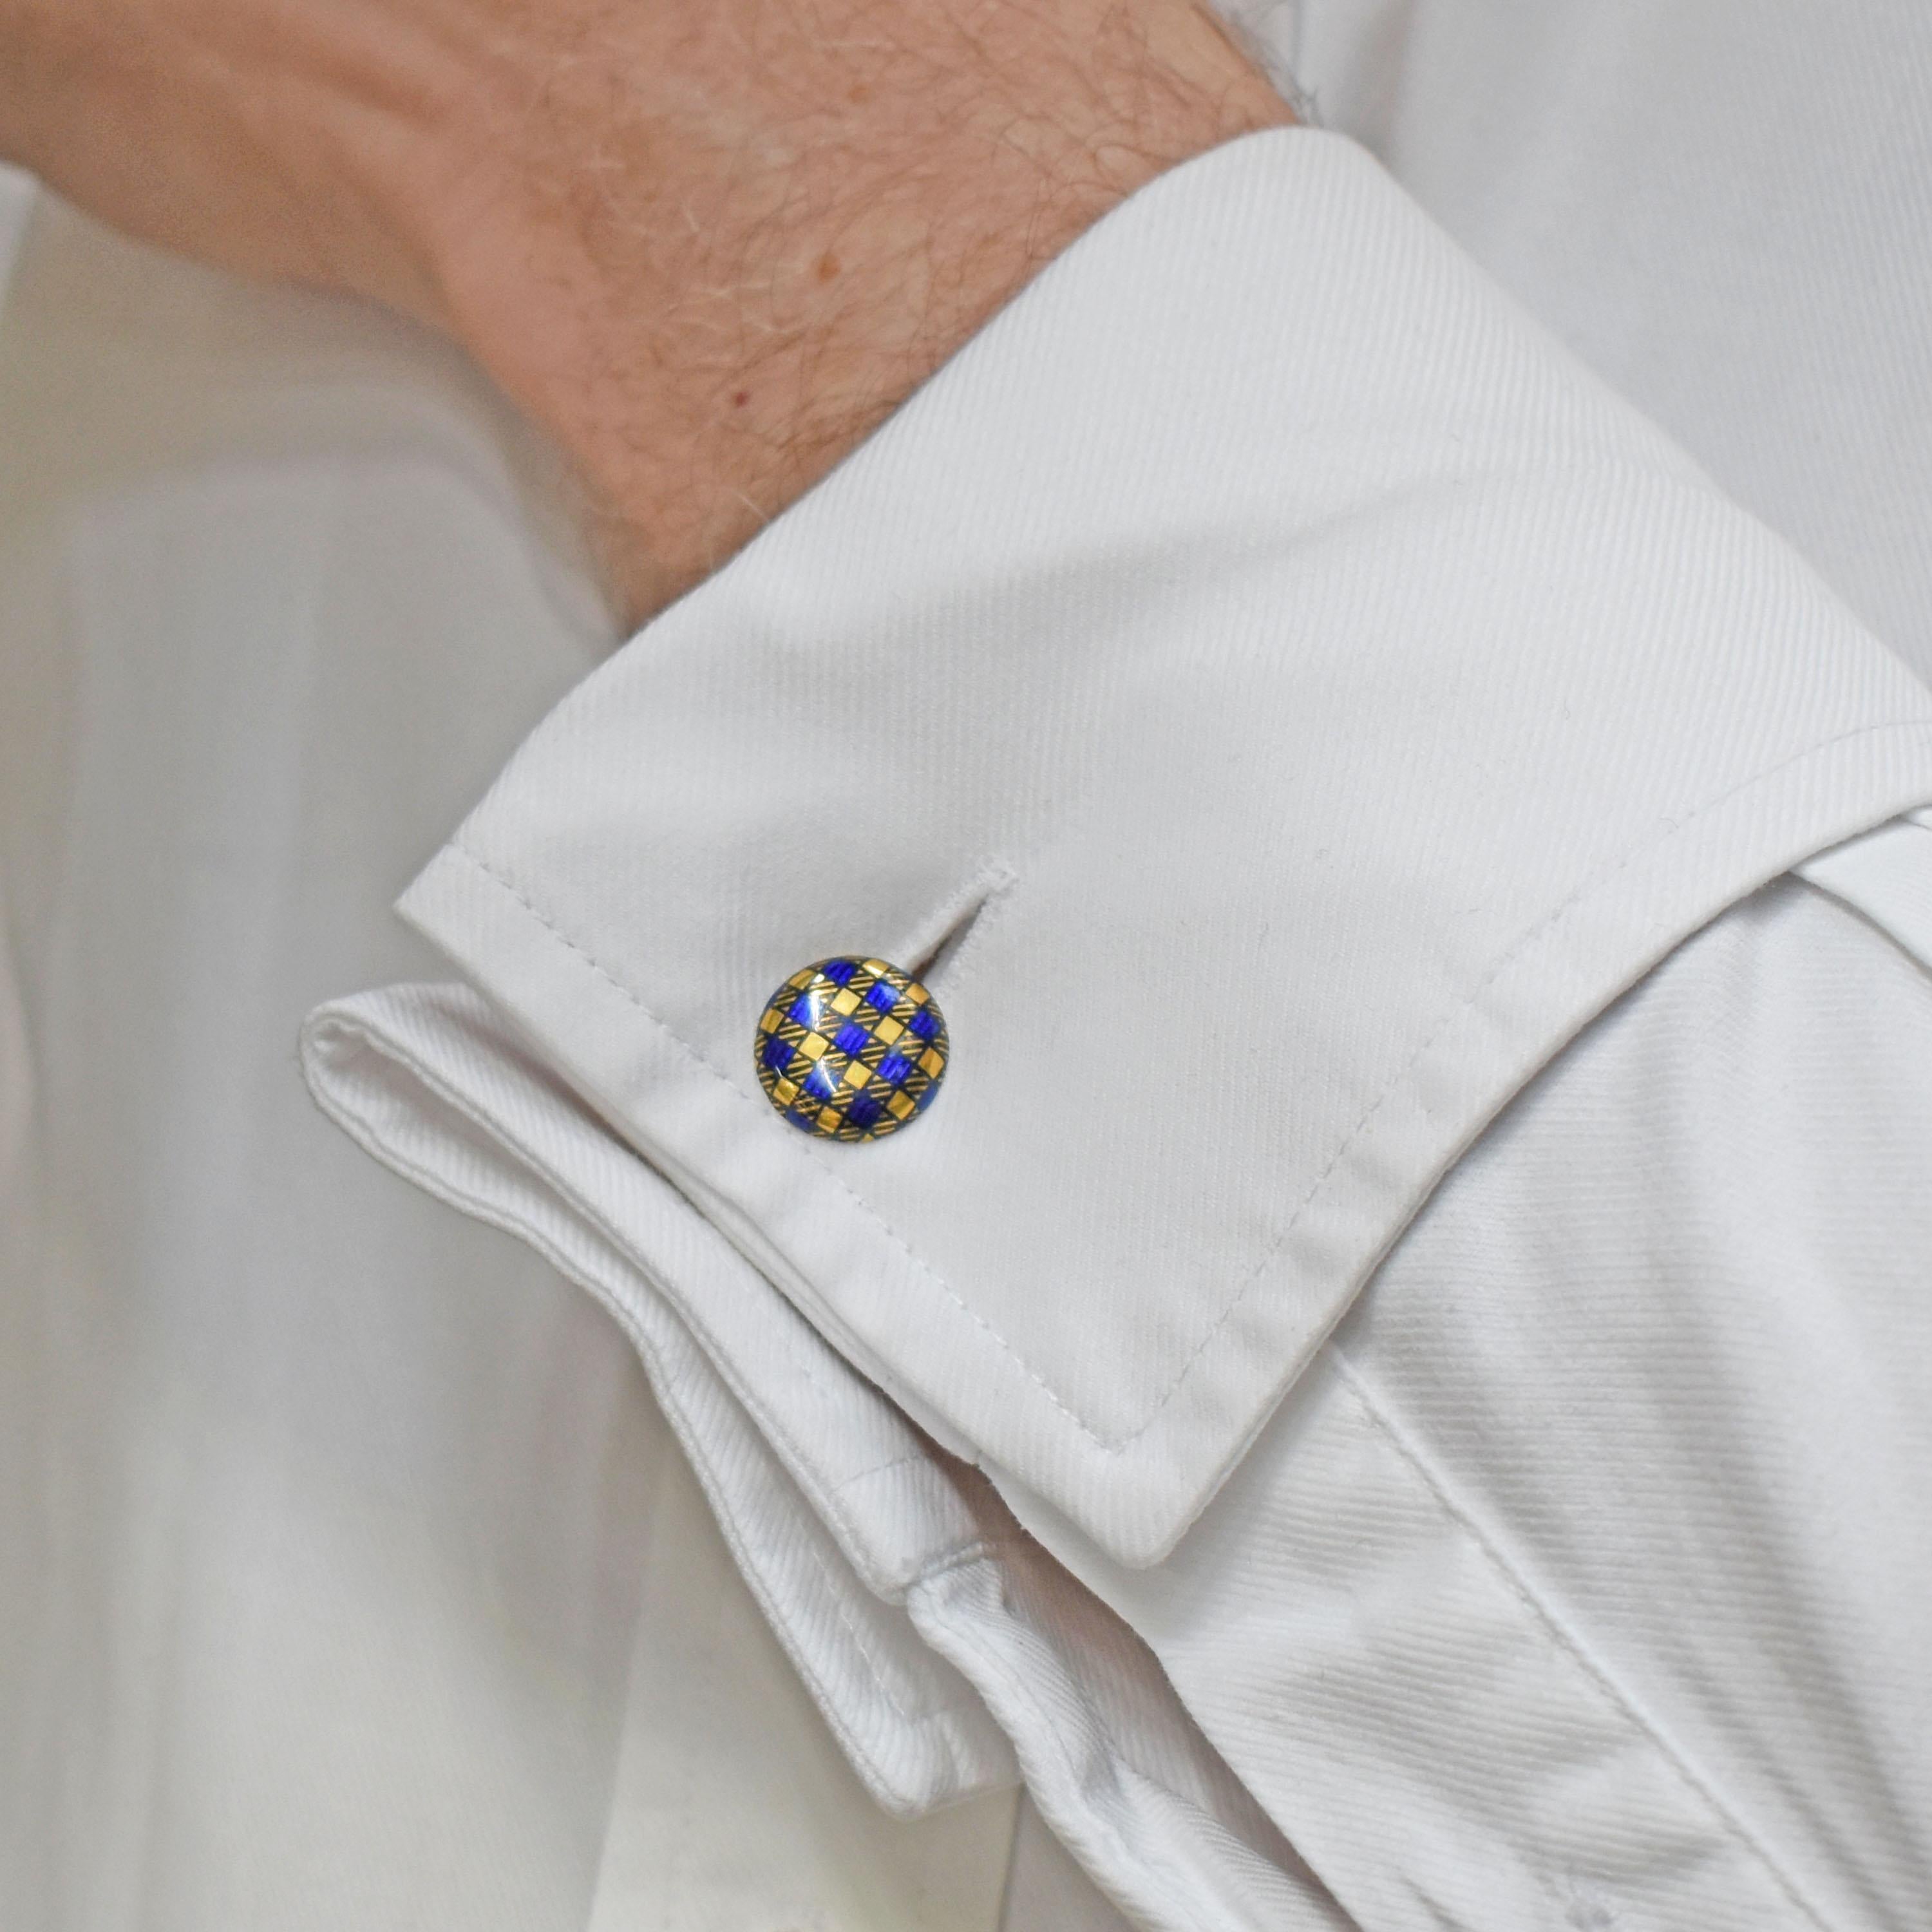 Ensemble vestimentaire en émail écossais, comprenant une paire de boutons de manchette, trois boutons et une épingle à cravate, conçu avec un motif en émail bleu représentant un écossais, sur de l'or 14ct, avec des marques J.B., milieu du 20e